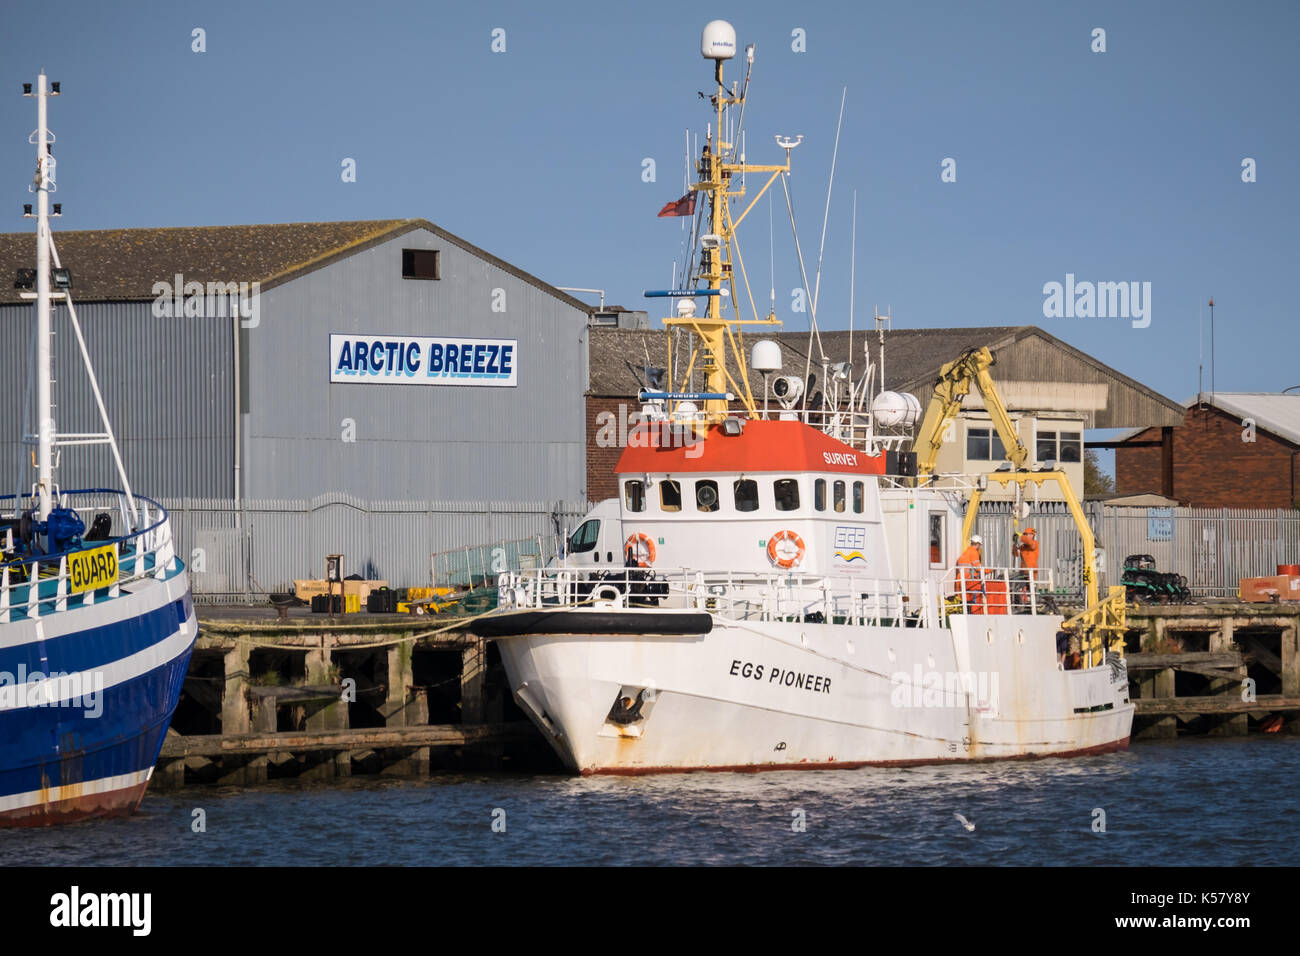 Il sondaggio nave EGS Pioneer accanto a Grimsby Dock di pesce Foto Stock